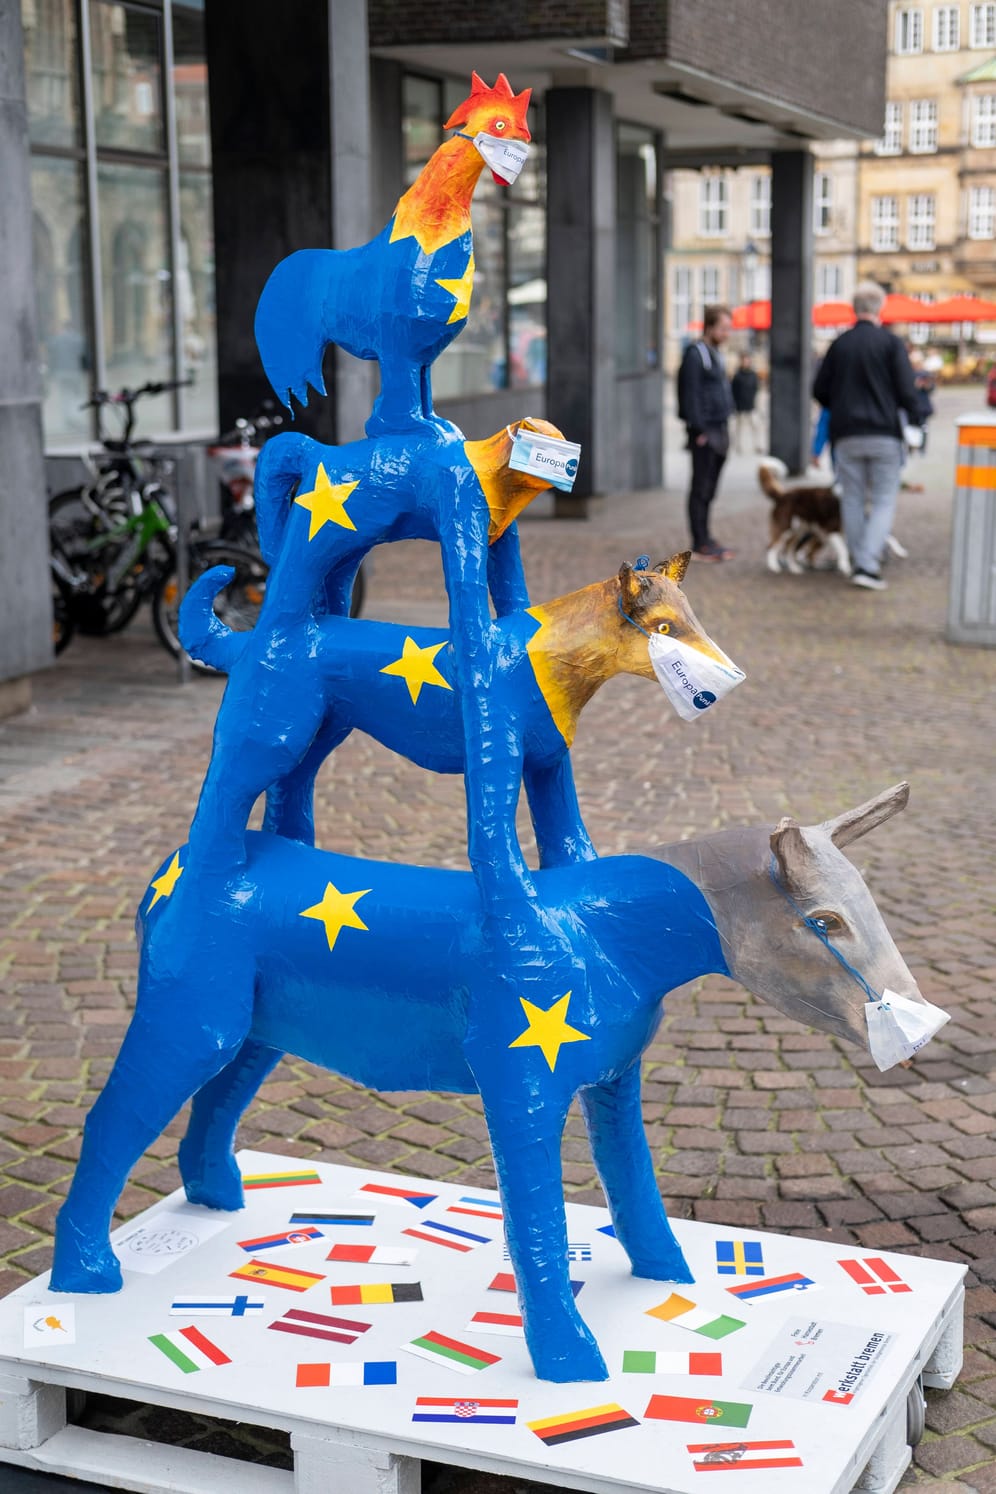 Wahrzeichen machten auch mit beim Maskentragen, hier die Bremer Stadtmusikanten als Europa-Installation auf dem Bremer Marktplatz...